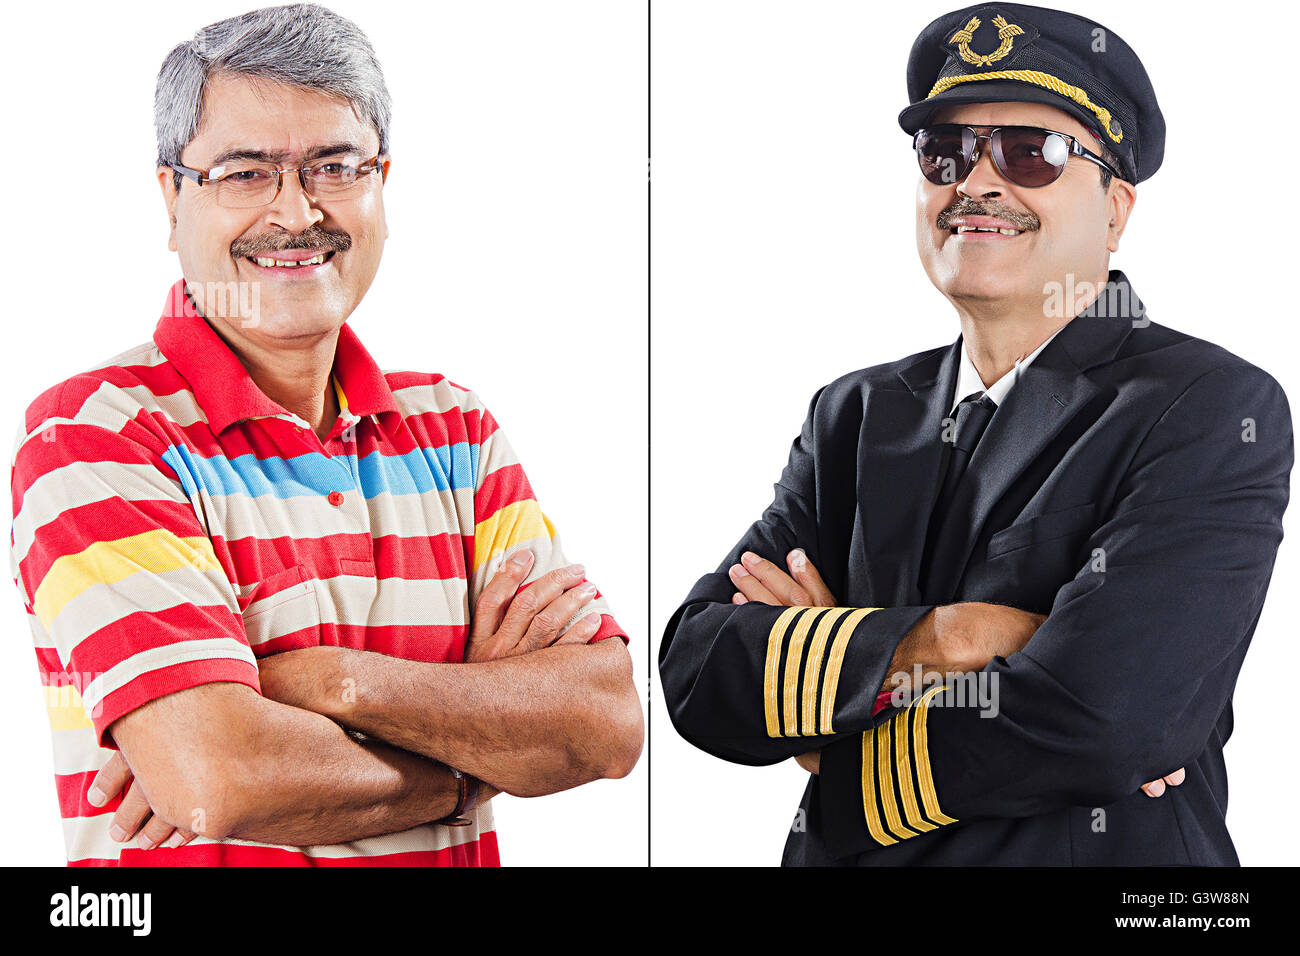 2 Personen erwachsene Mann aspiration Vergleich kontrast Bestimmung pilot Senior lächelnd stehen Stockfoto